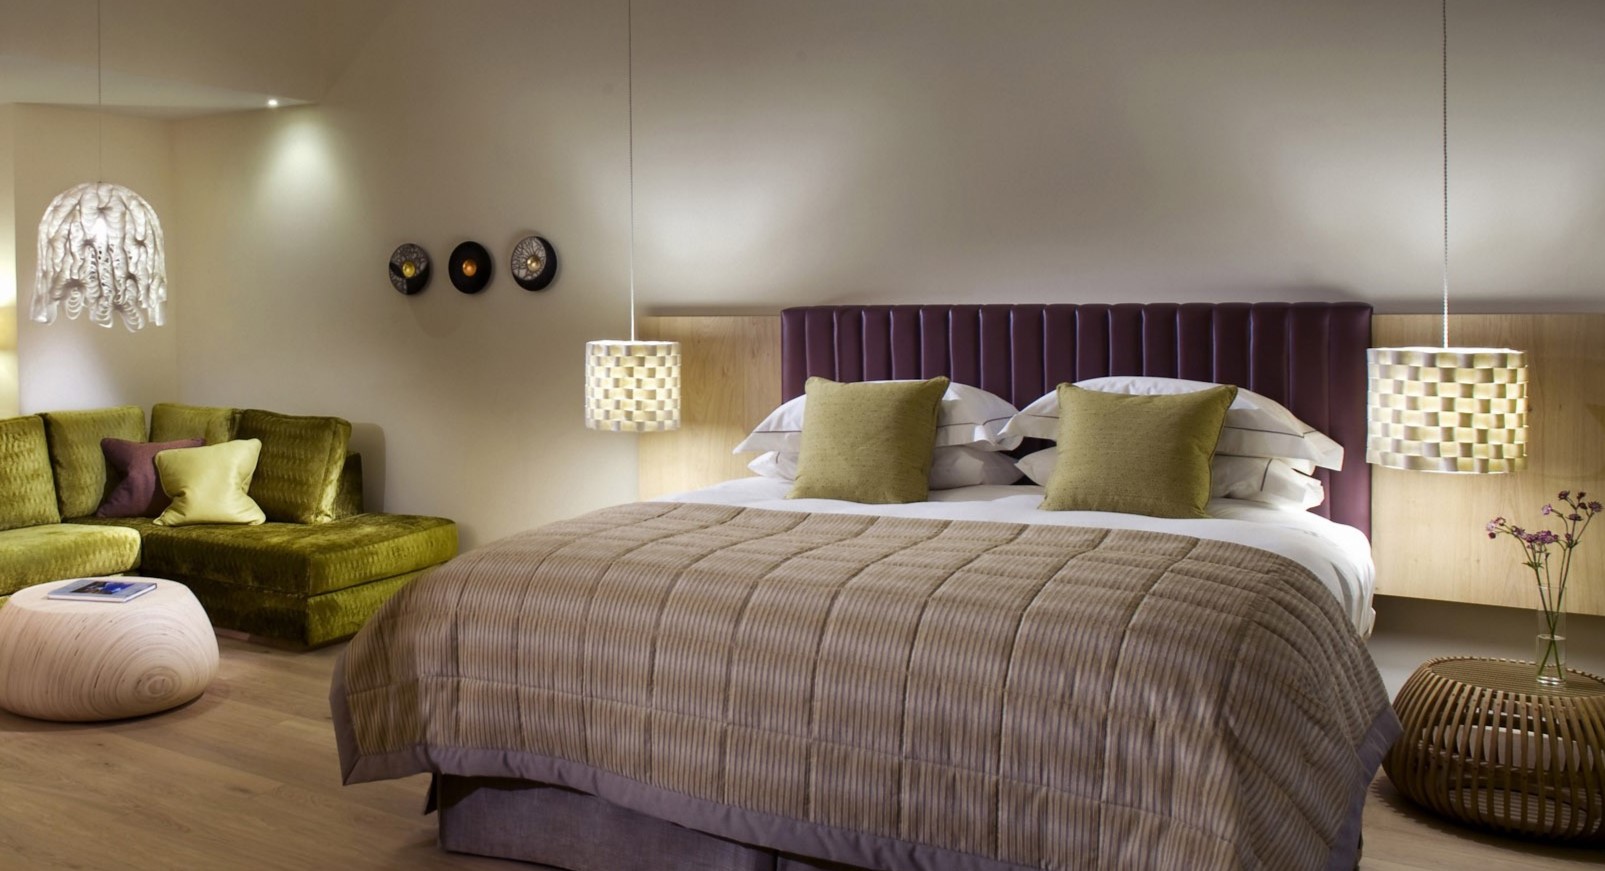 Фиолетовое изголовьем является акцентным элементом в интерьере спальни